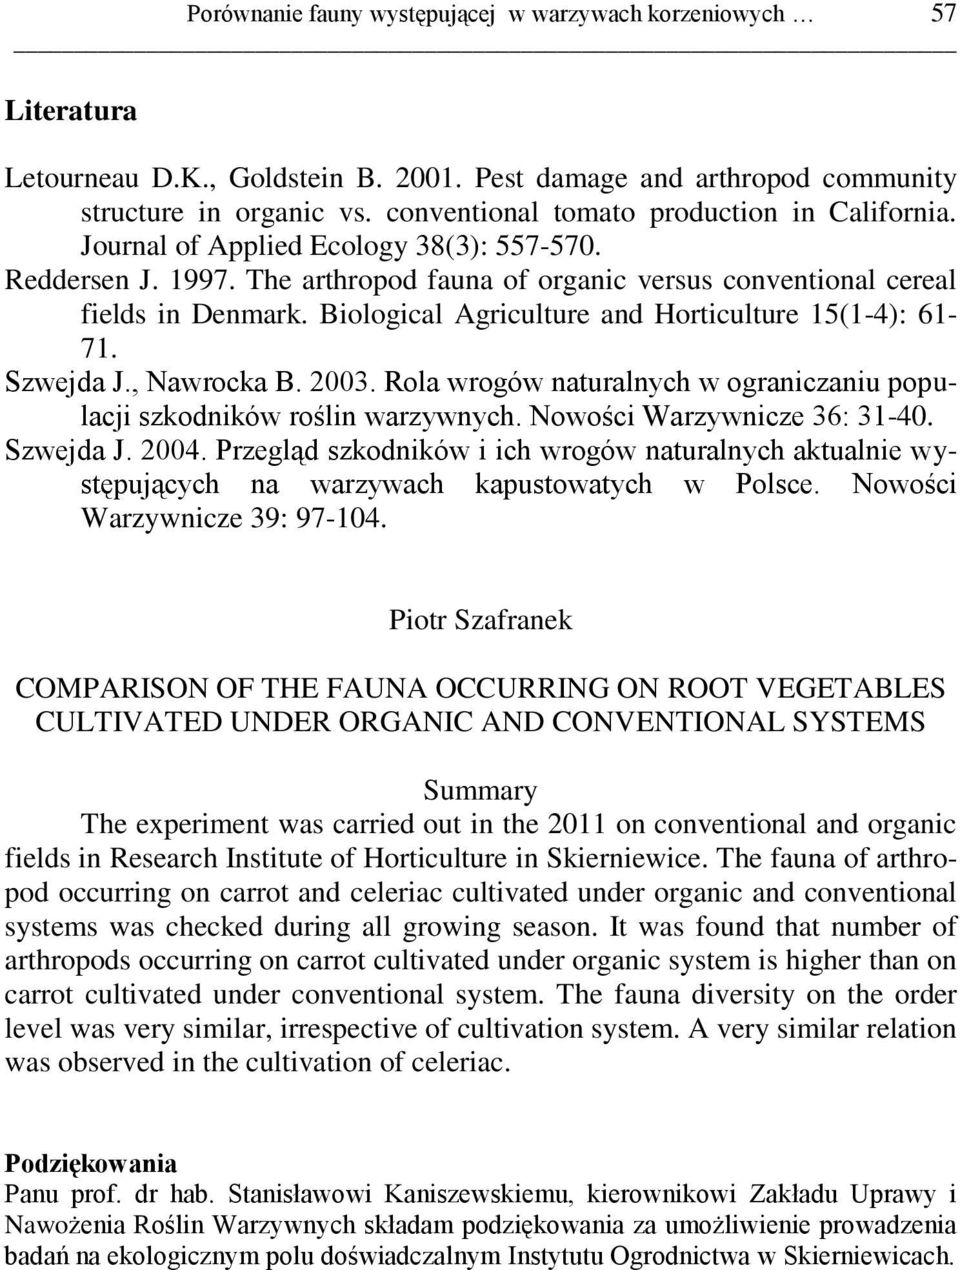 Biological Agriculture and Horticulture 15(1-4): 61-71. Szwejda J., Nawrocka B. 2003. Rola wrogów naturalnych w ograniczaniu populacji szkodników roślin warzywnych. Nowości Warzywnicze 36: 31-40.